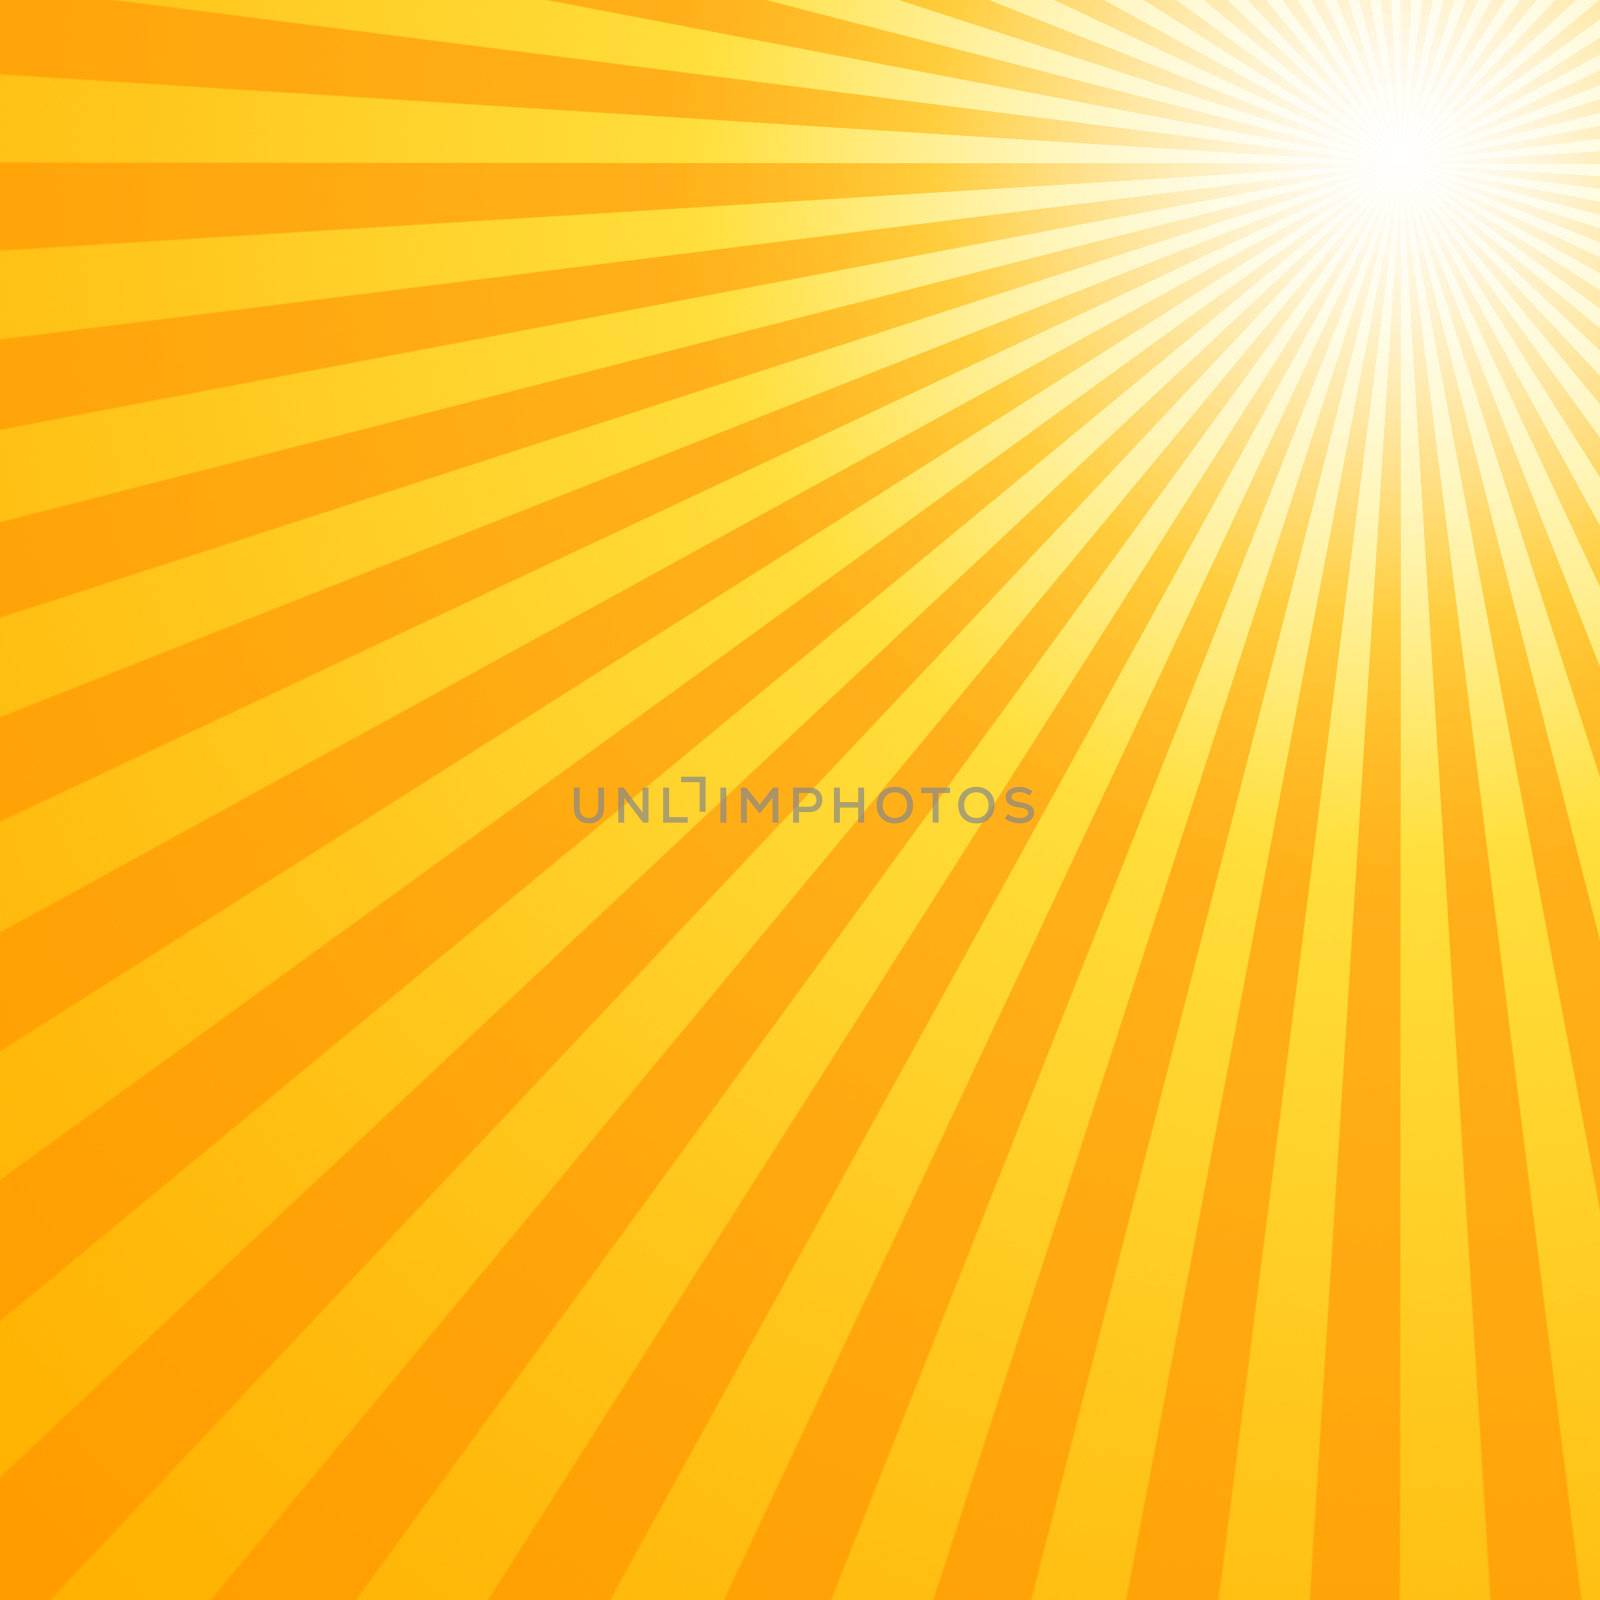 Really hot summer sun - illustration